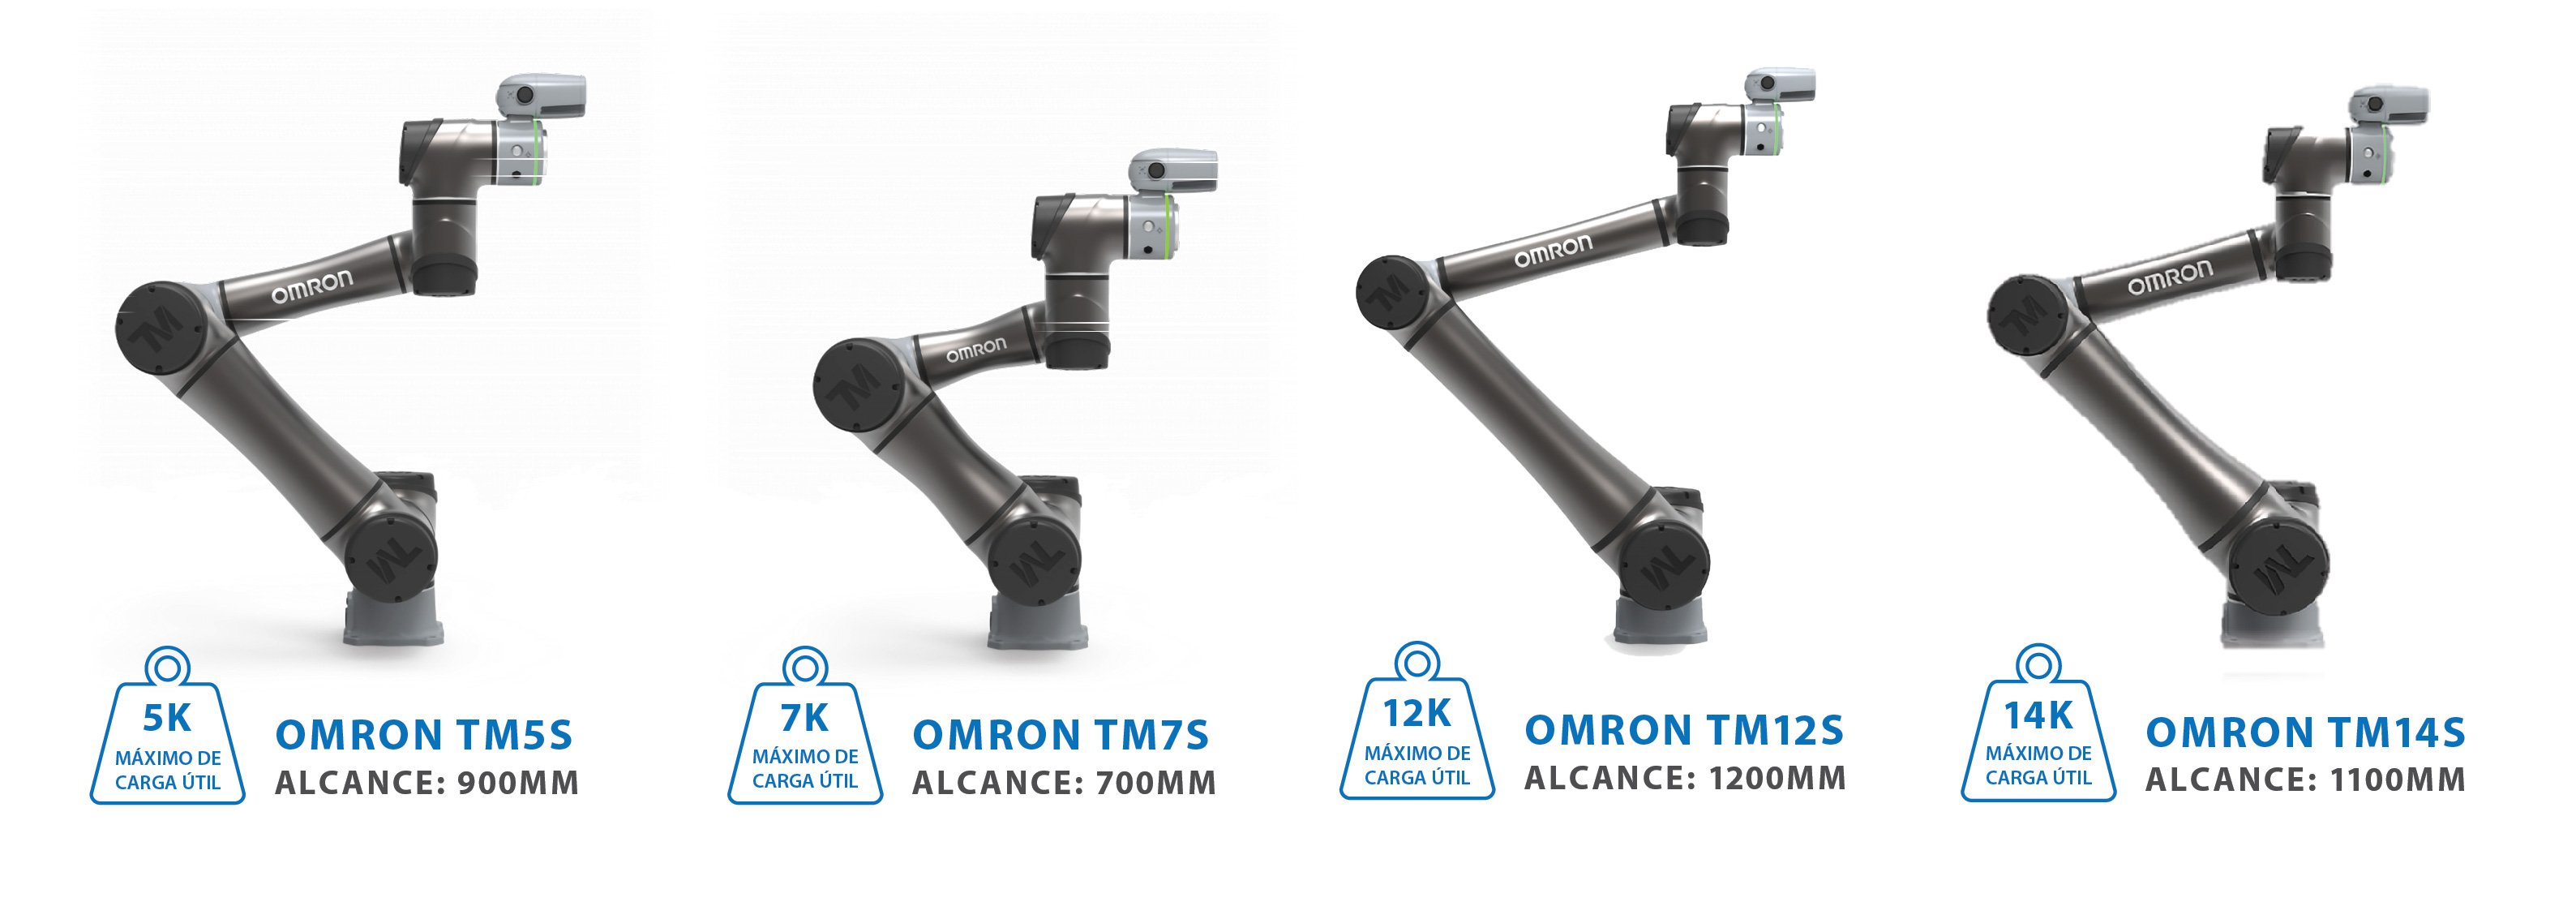 Se ha lanzado la próxima generación de robots colaborativos TM-Serie S de Omron